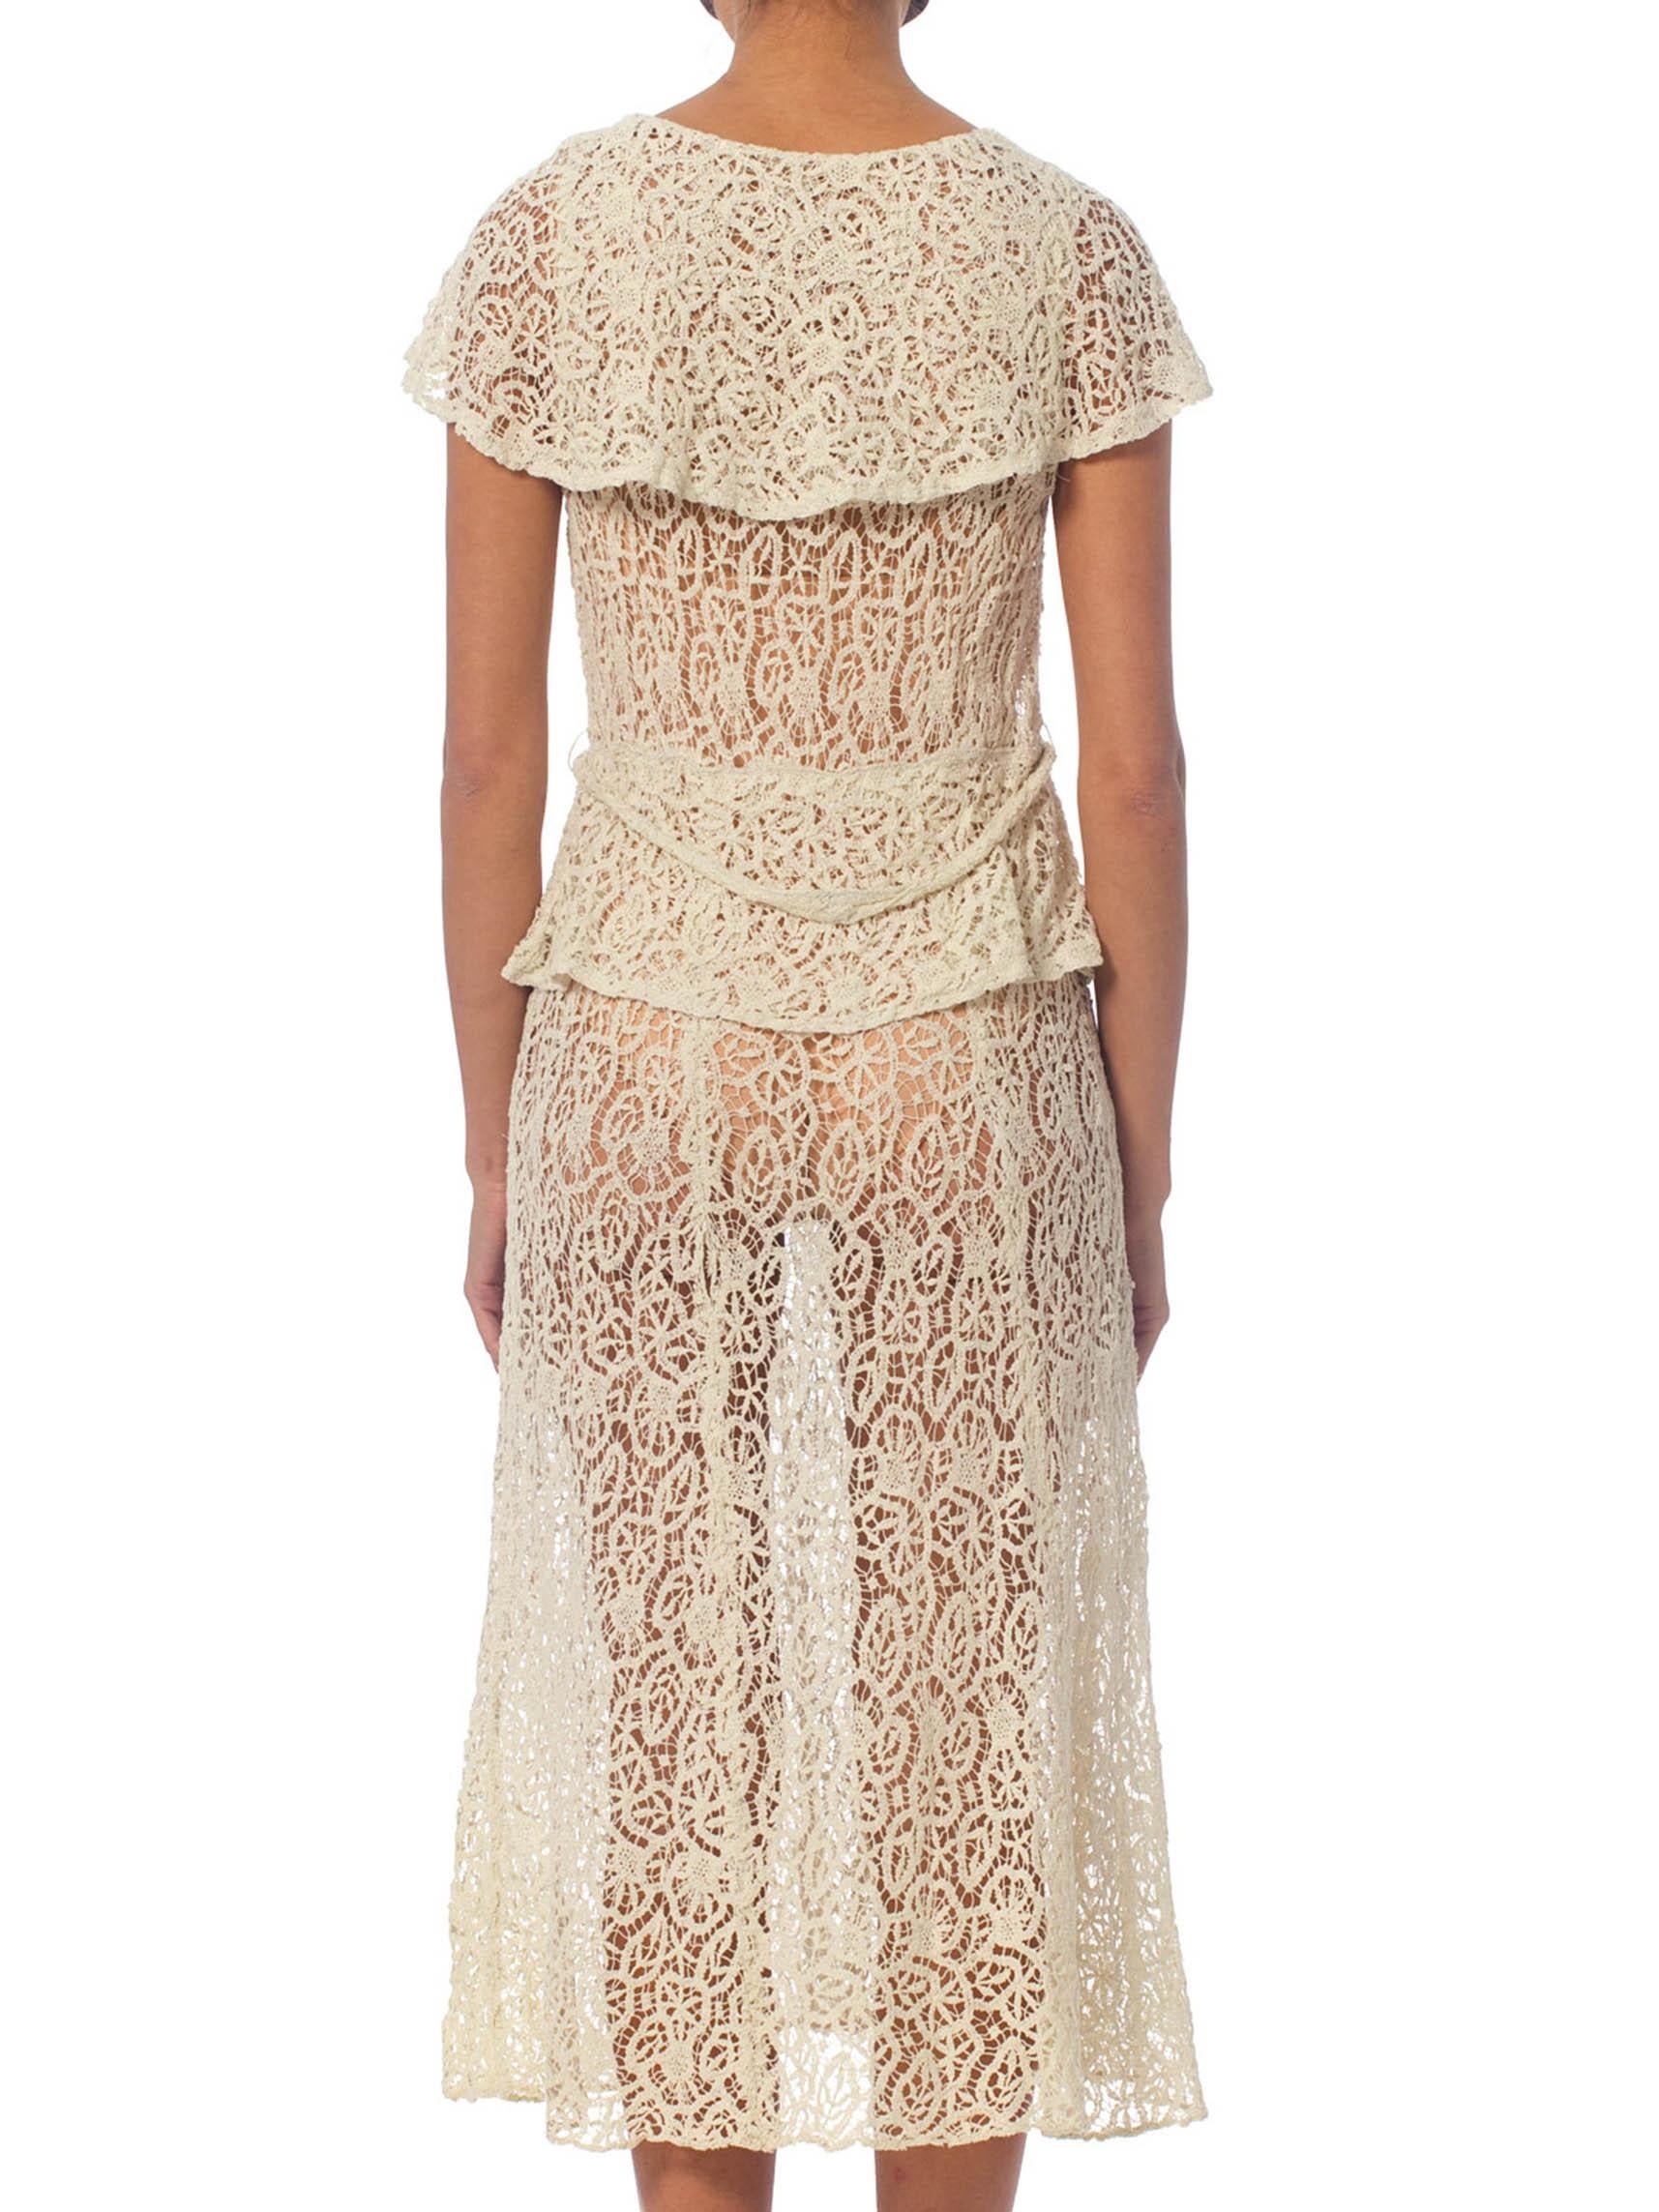 1930s lace dress